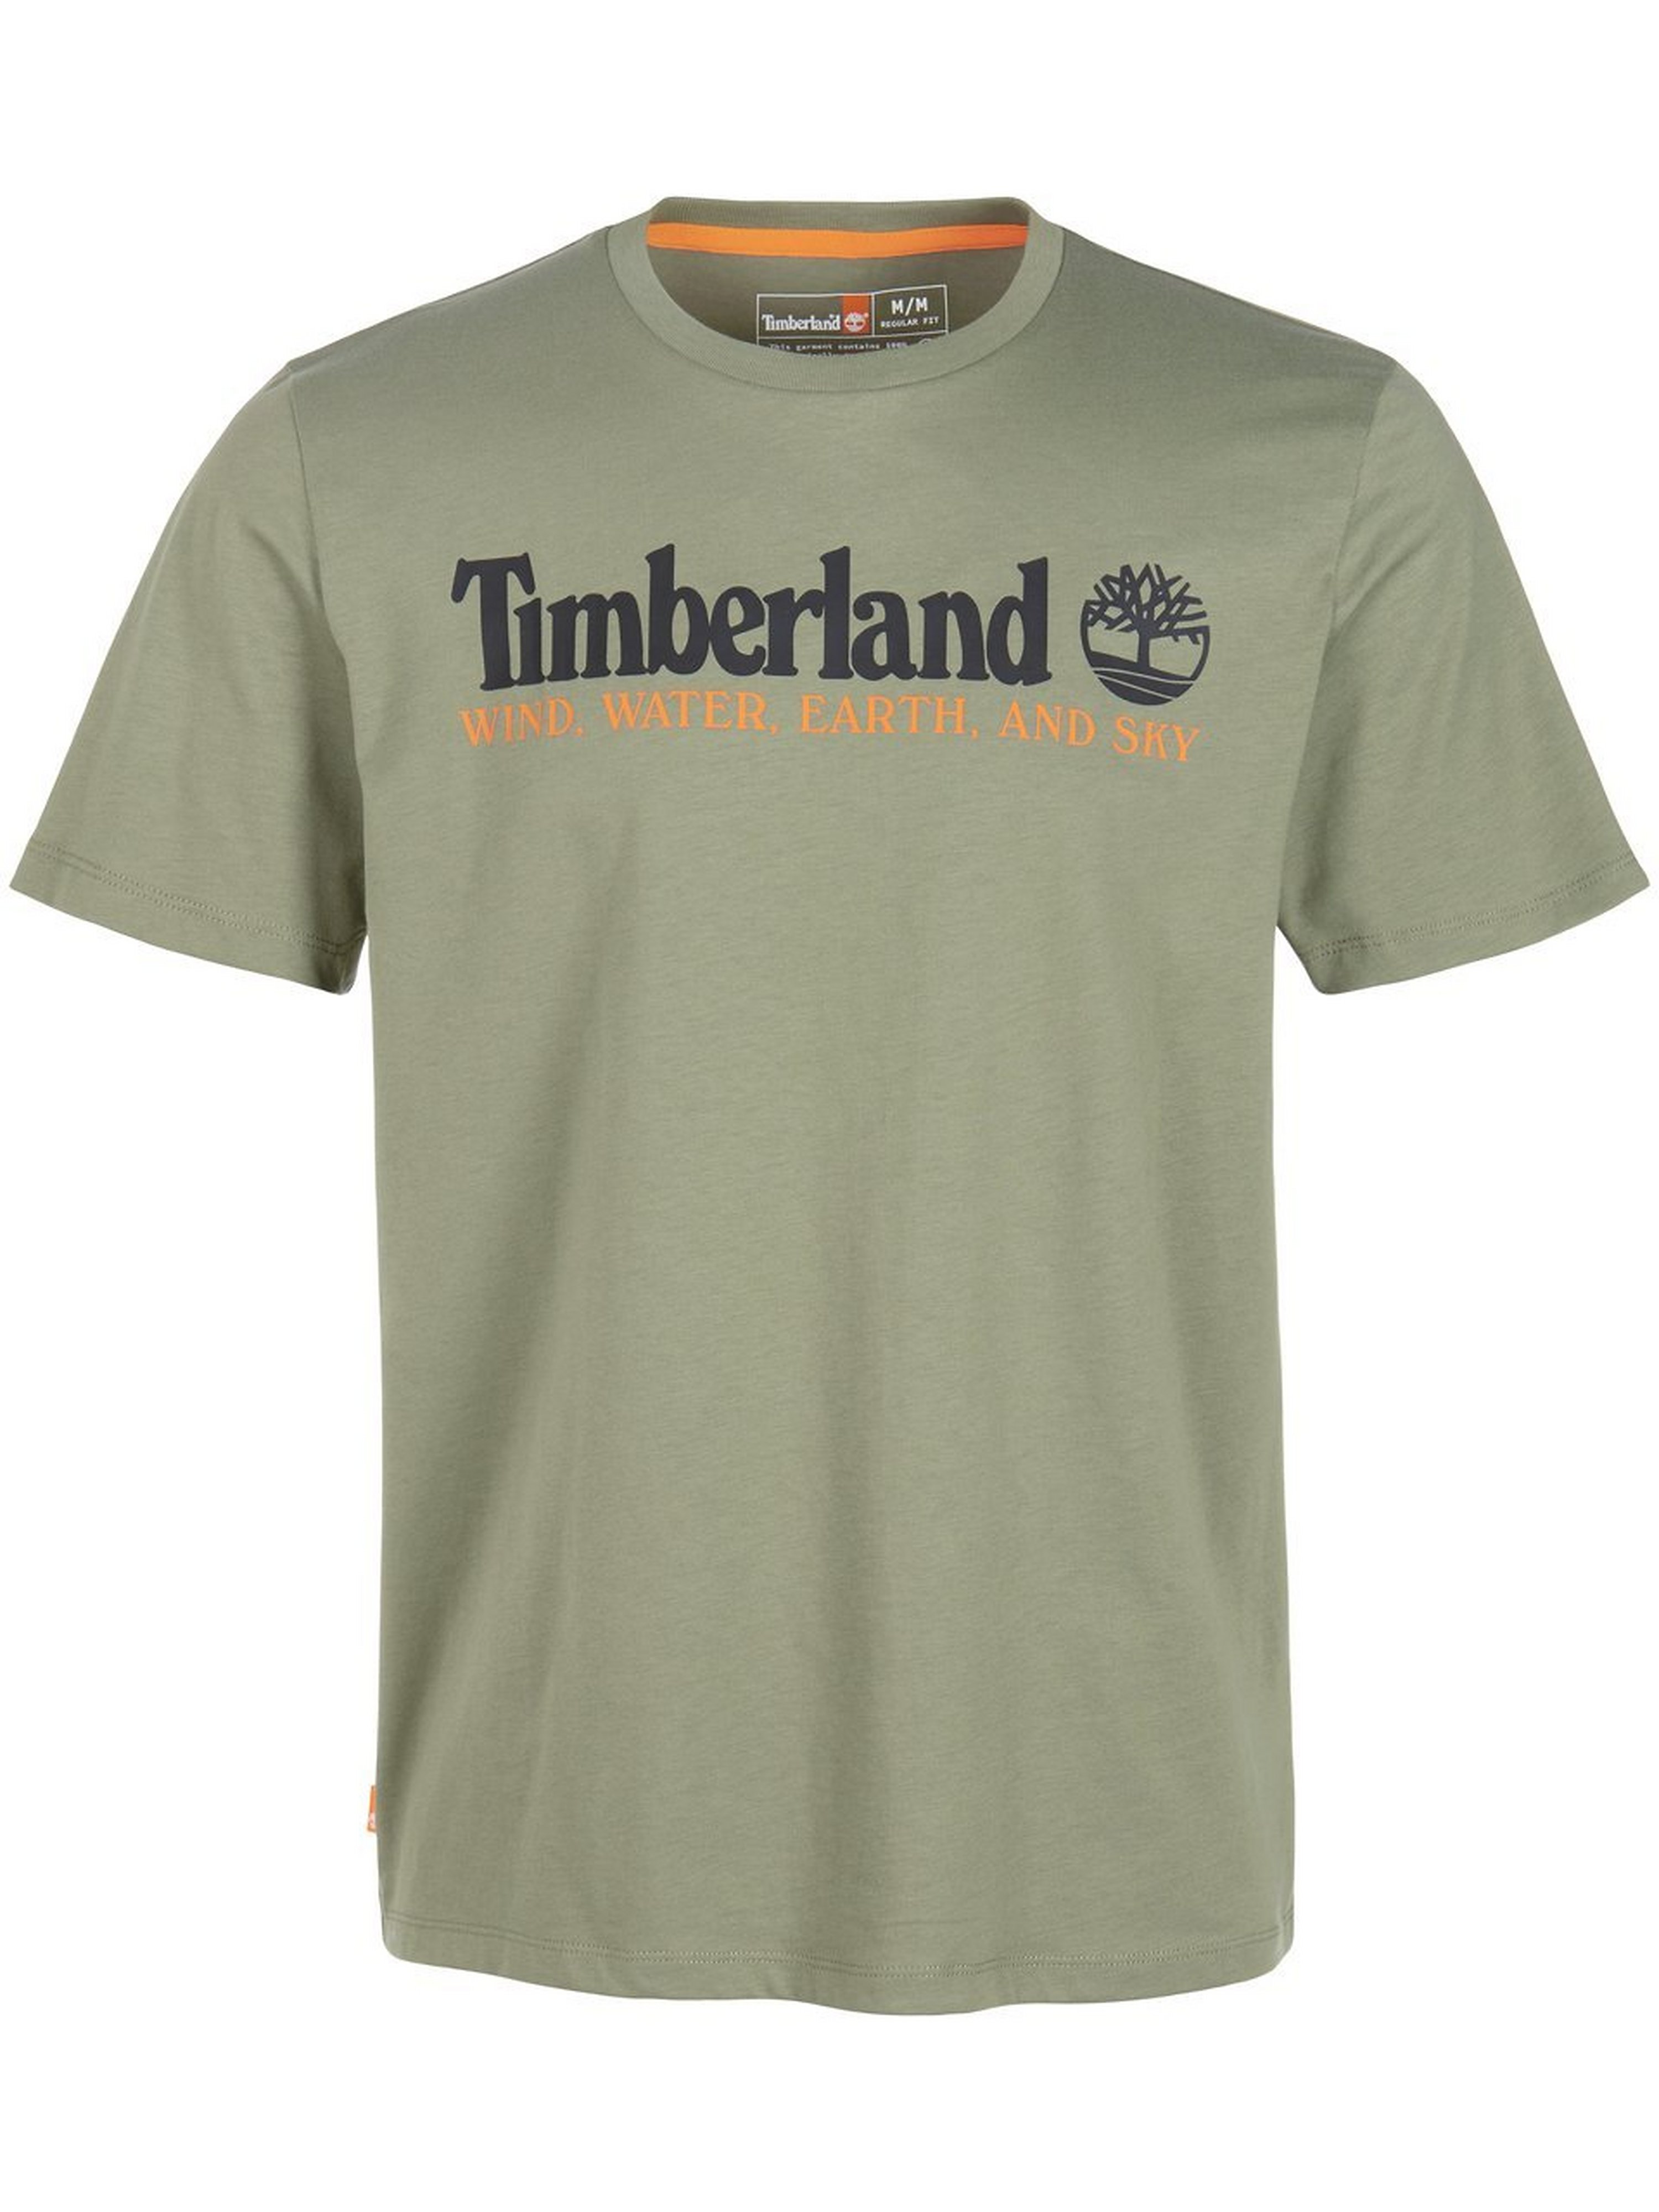 T-shirt Van Timberland groen